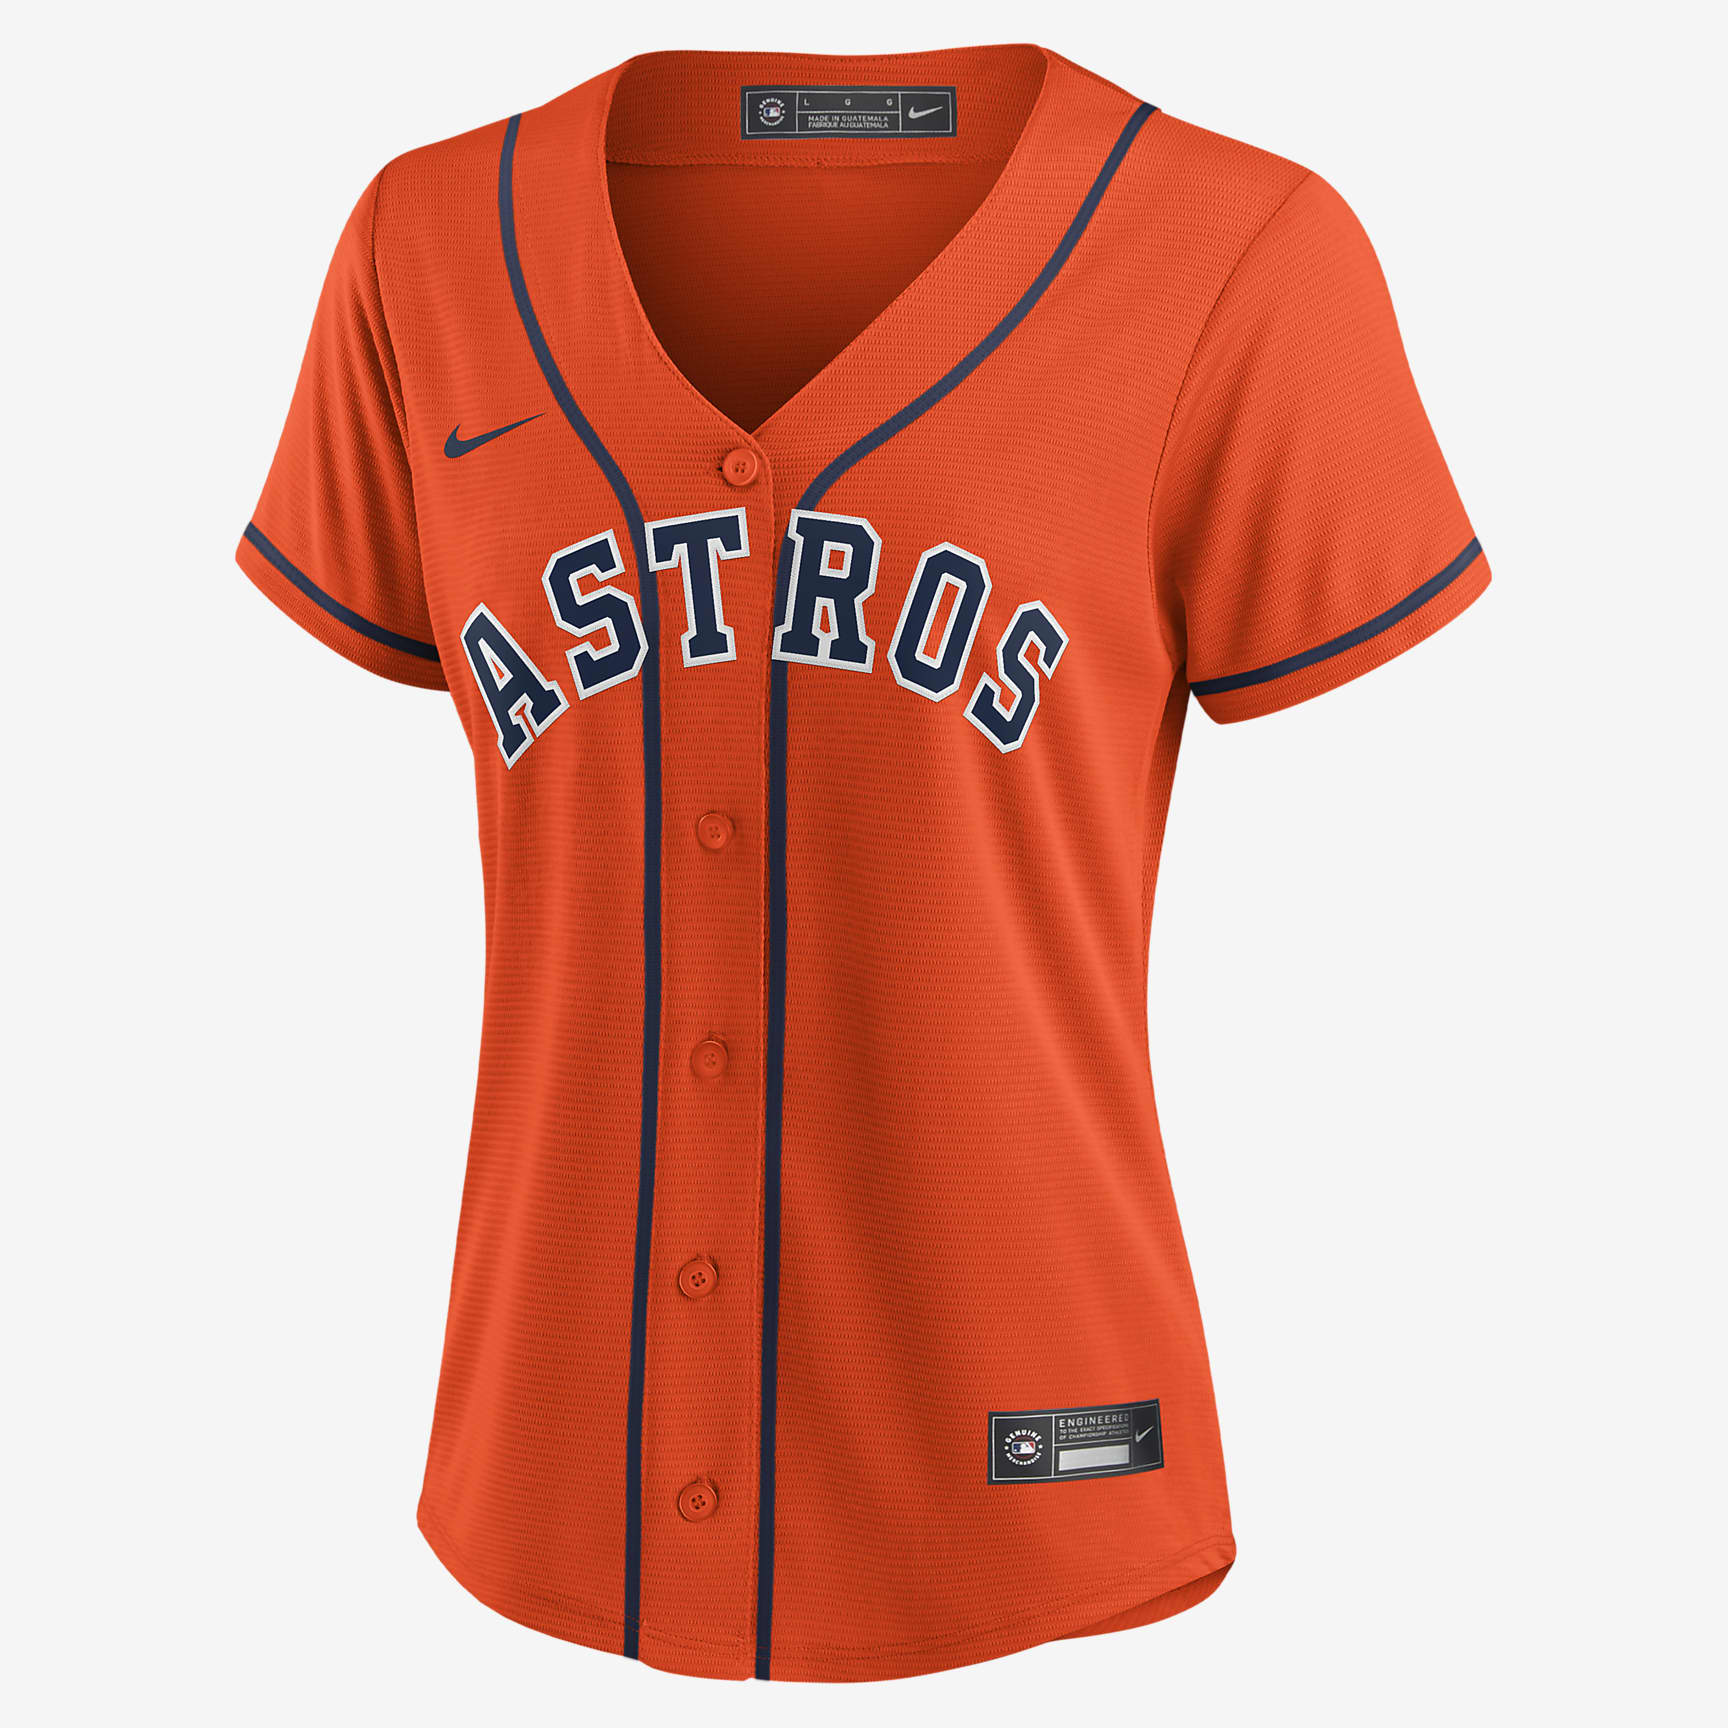 Jersey de béisbol Replica para mujer MLB Houston Astros. Nike.com